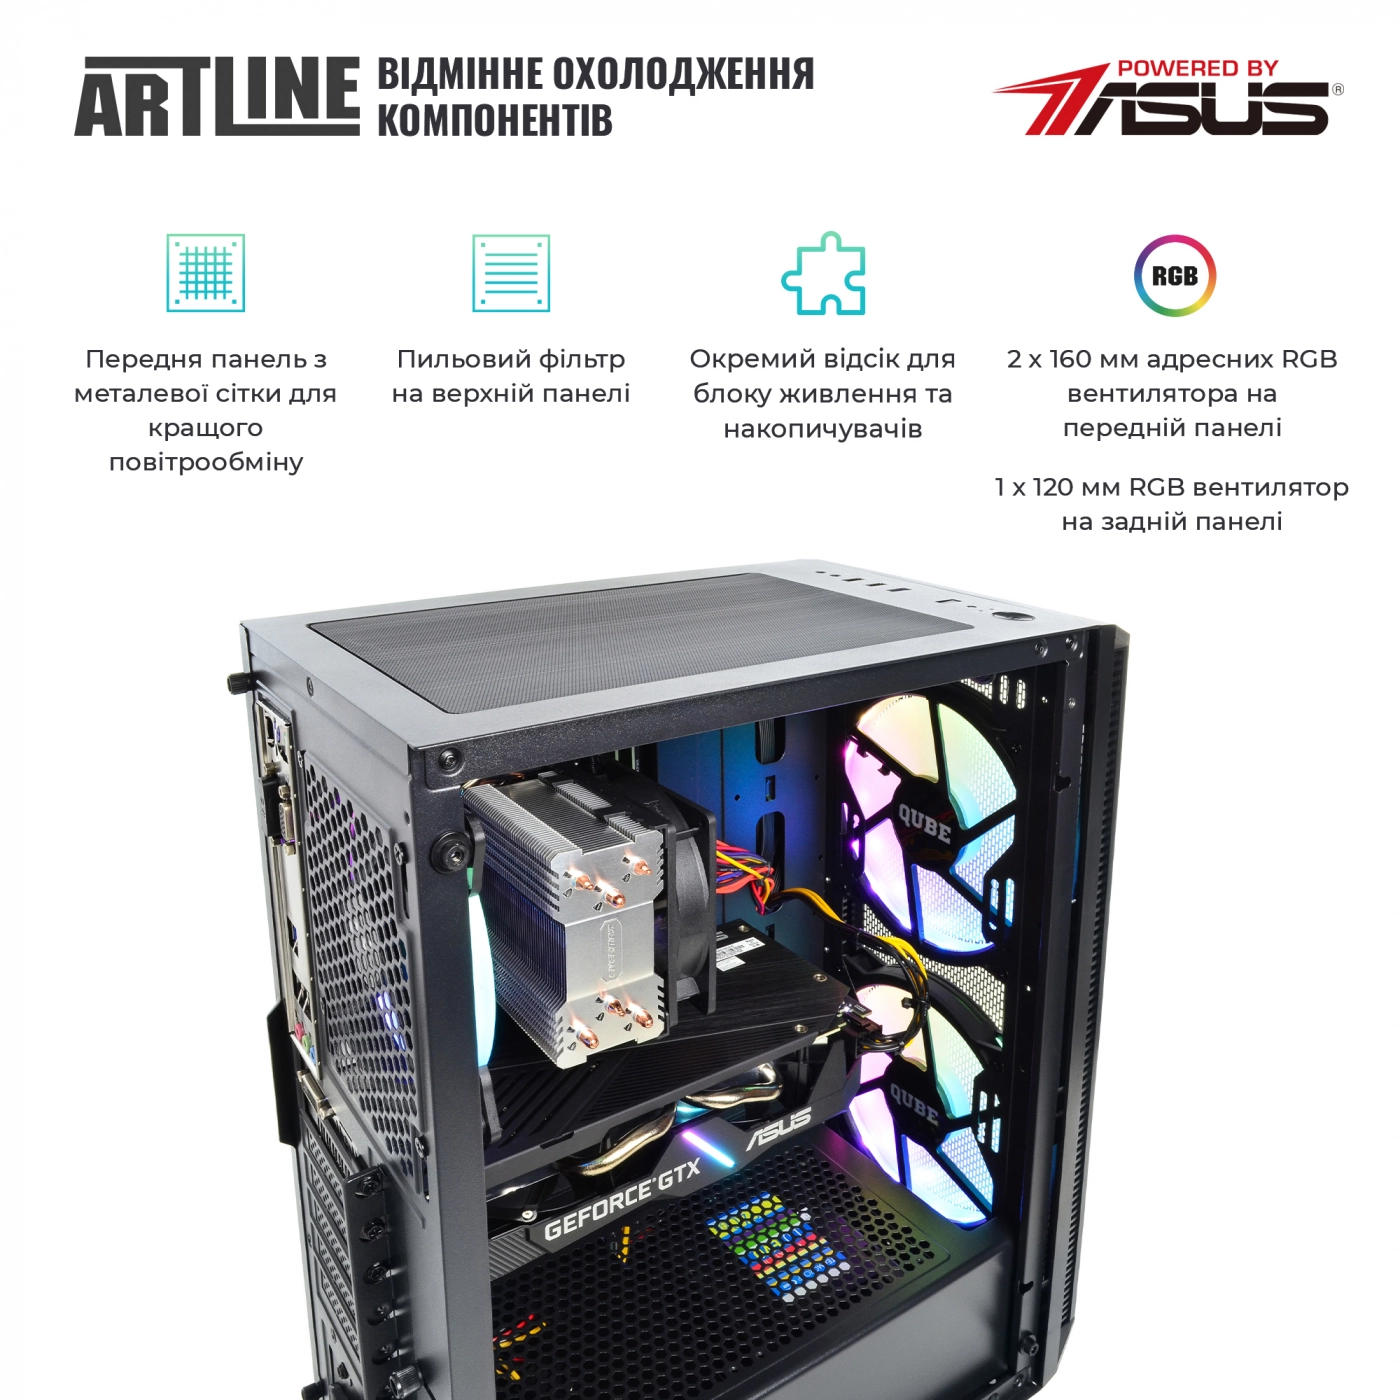 Купить Компьютер ARTLINE Gaming X65v26 - фото 2